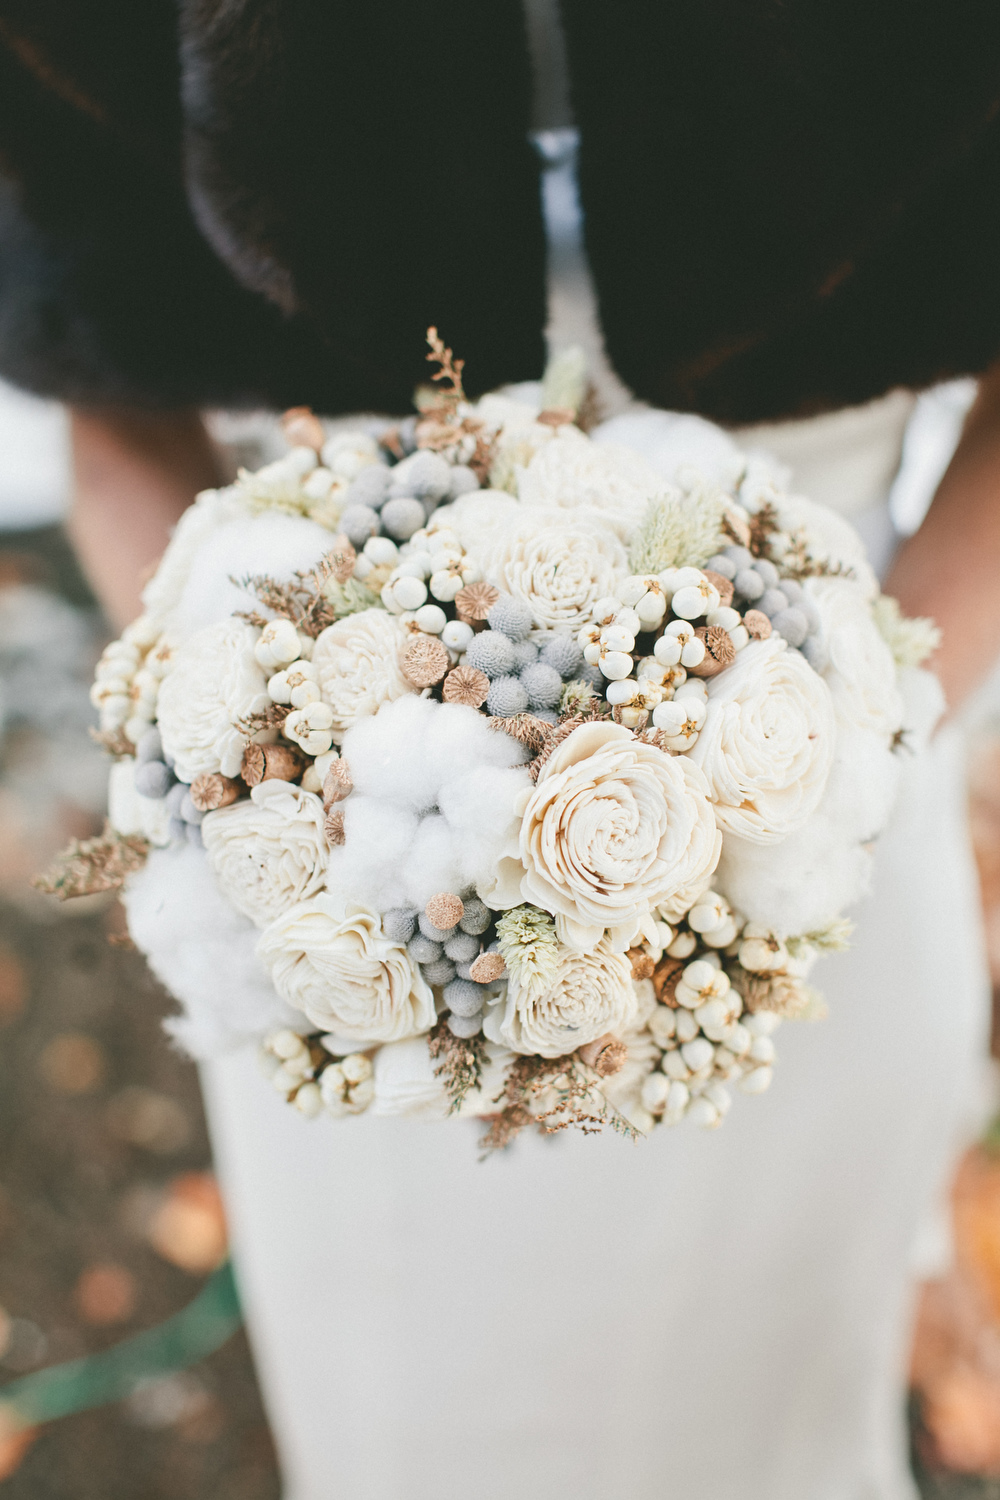 Winter Bridal Bouquet - A Vintage Fur Cape for a Romantic Snowy Winter Wedding